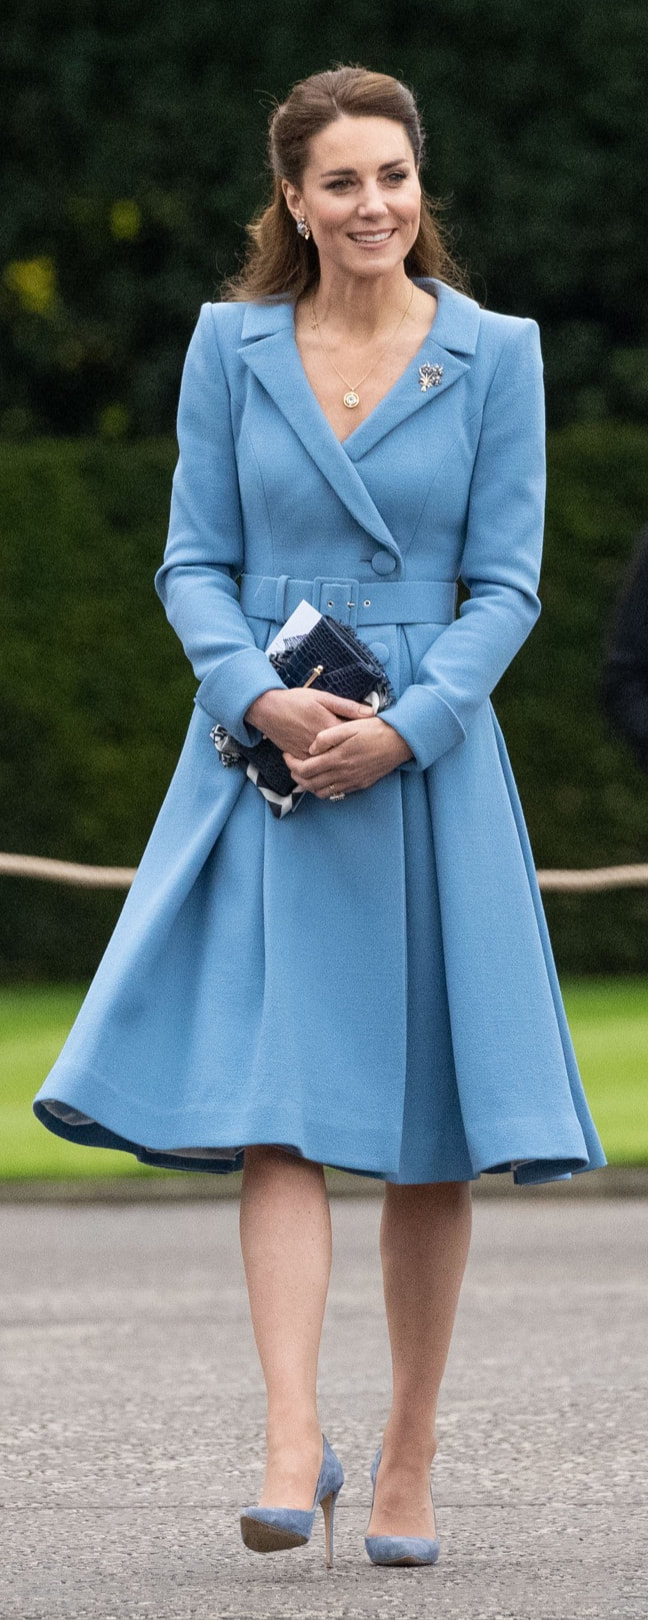 Kiki McDonough Apollo Blue Topaz Pendant Necklace as seen on Kate Middleton, The Duchess of Cambridge.